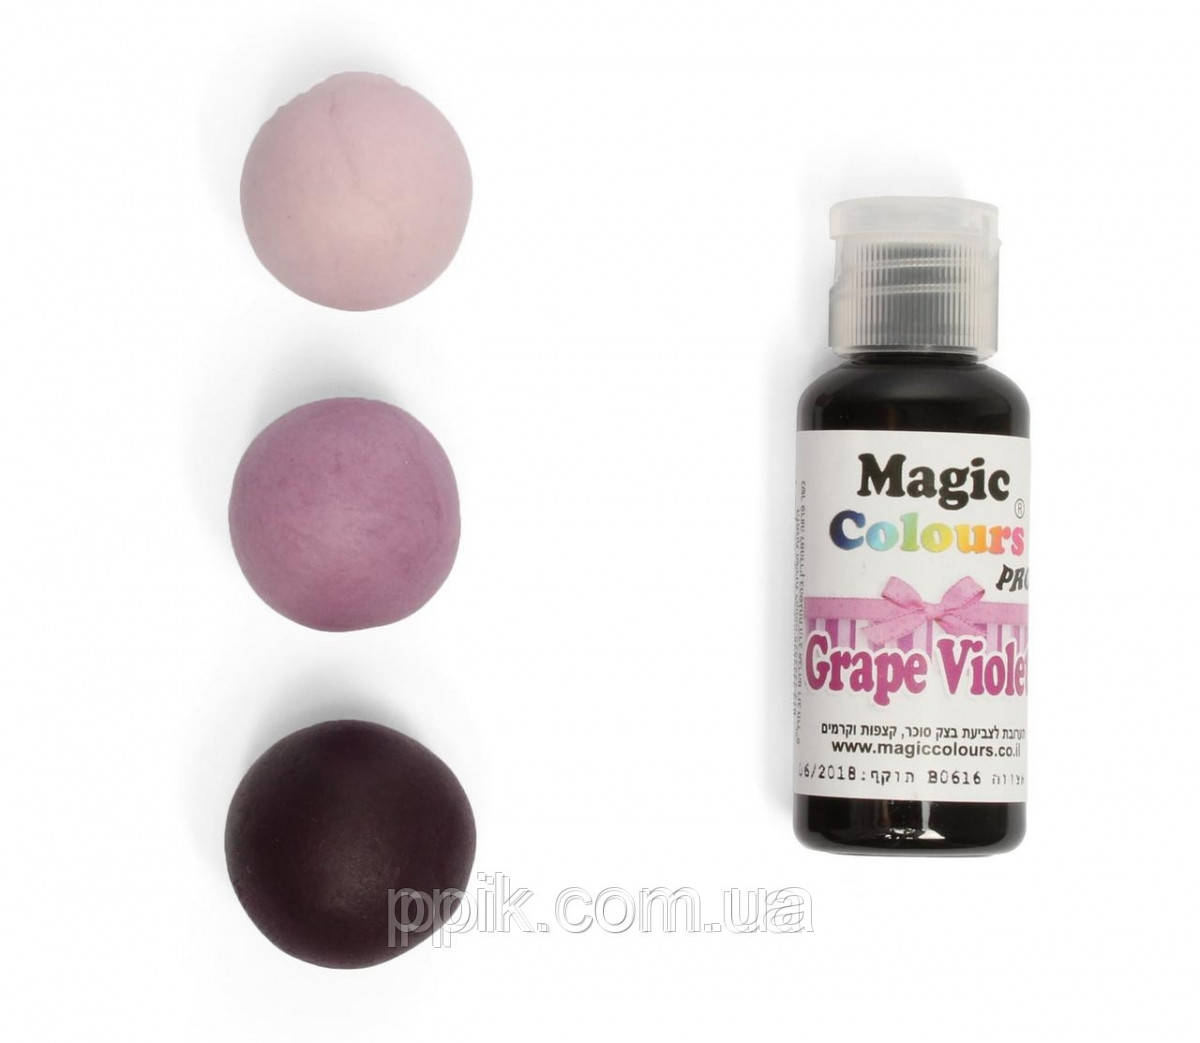 Гелевый краситель Magic Colours Фиолетовый (Grape Violet) 32 грамма